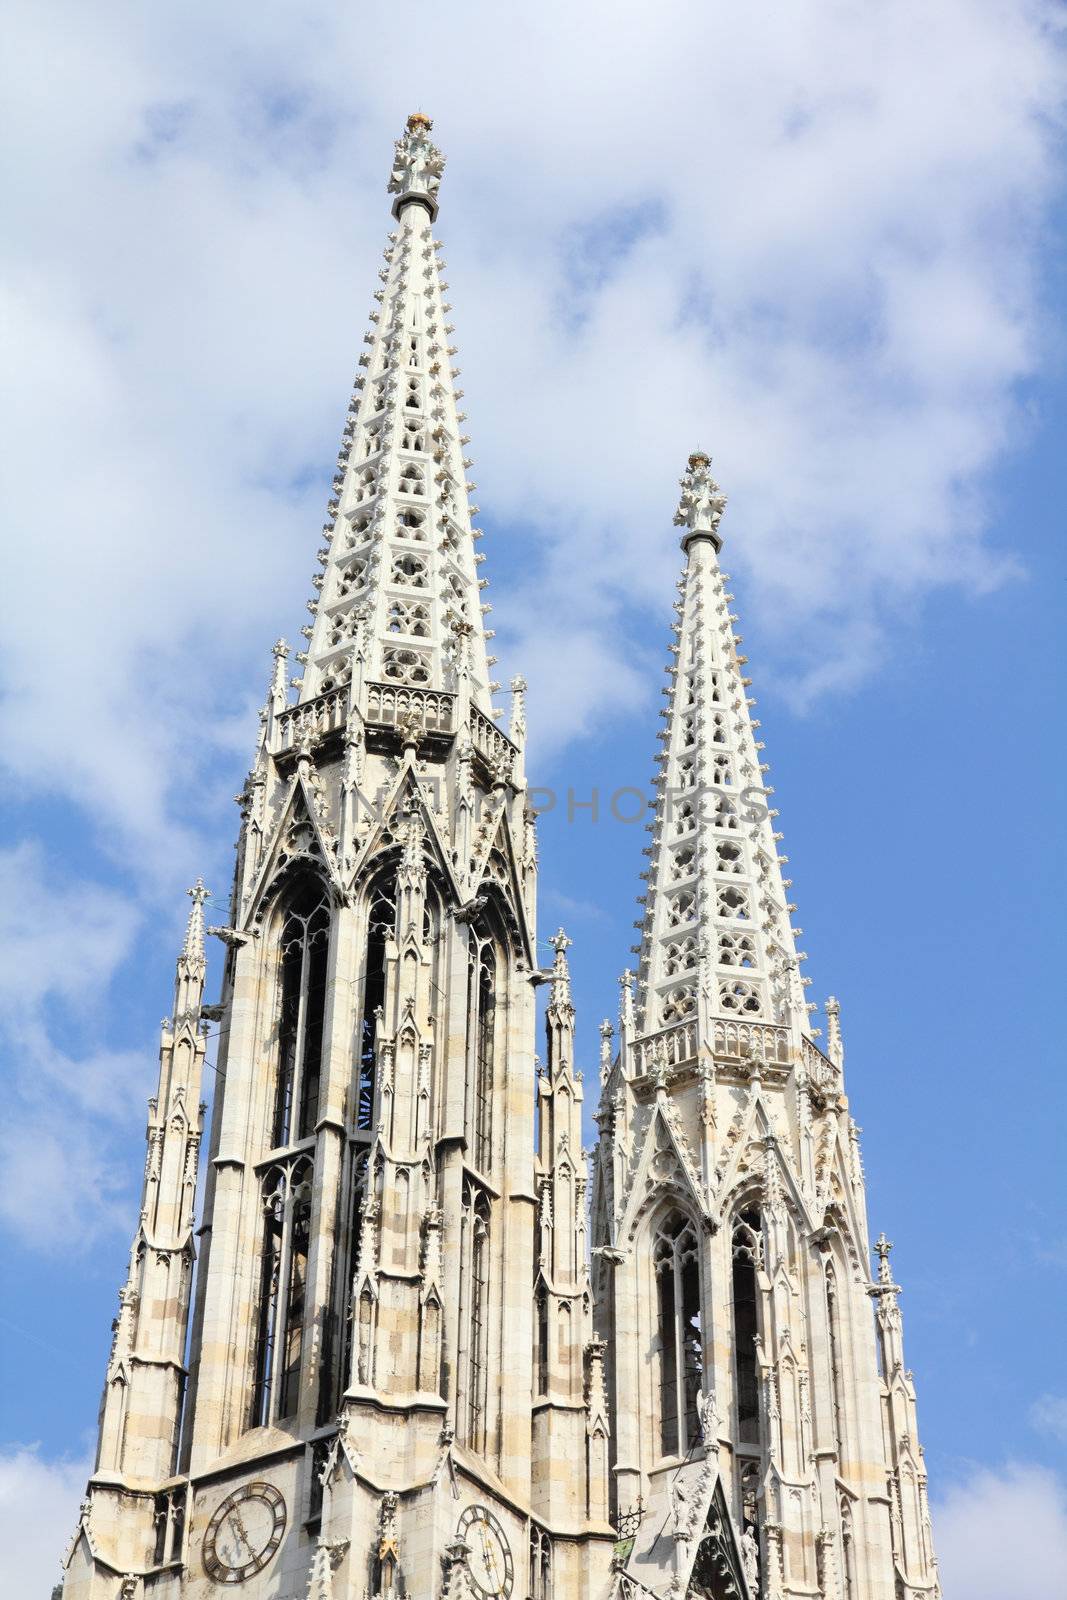 Vienna, Austria - famous Votivkirche (Votive Church)